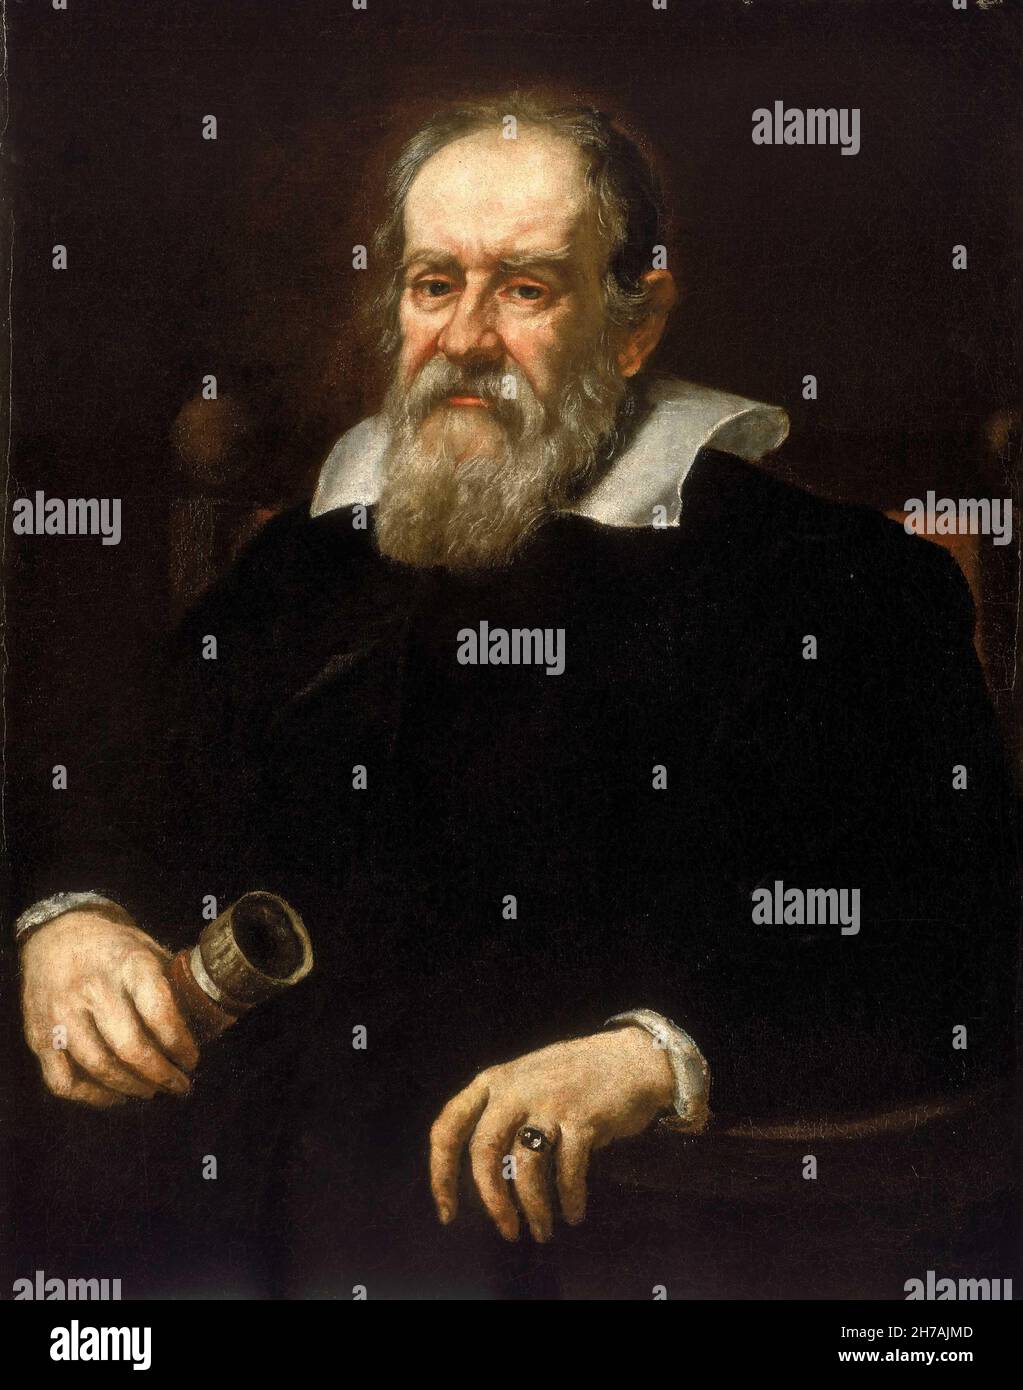 Jutus Sumermans, Portrait de Galileo Galilei, 1636, huile sur toile, Royaume-Uni Banque D'Images